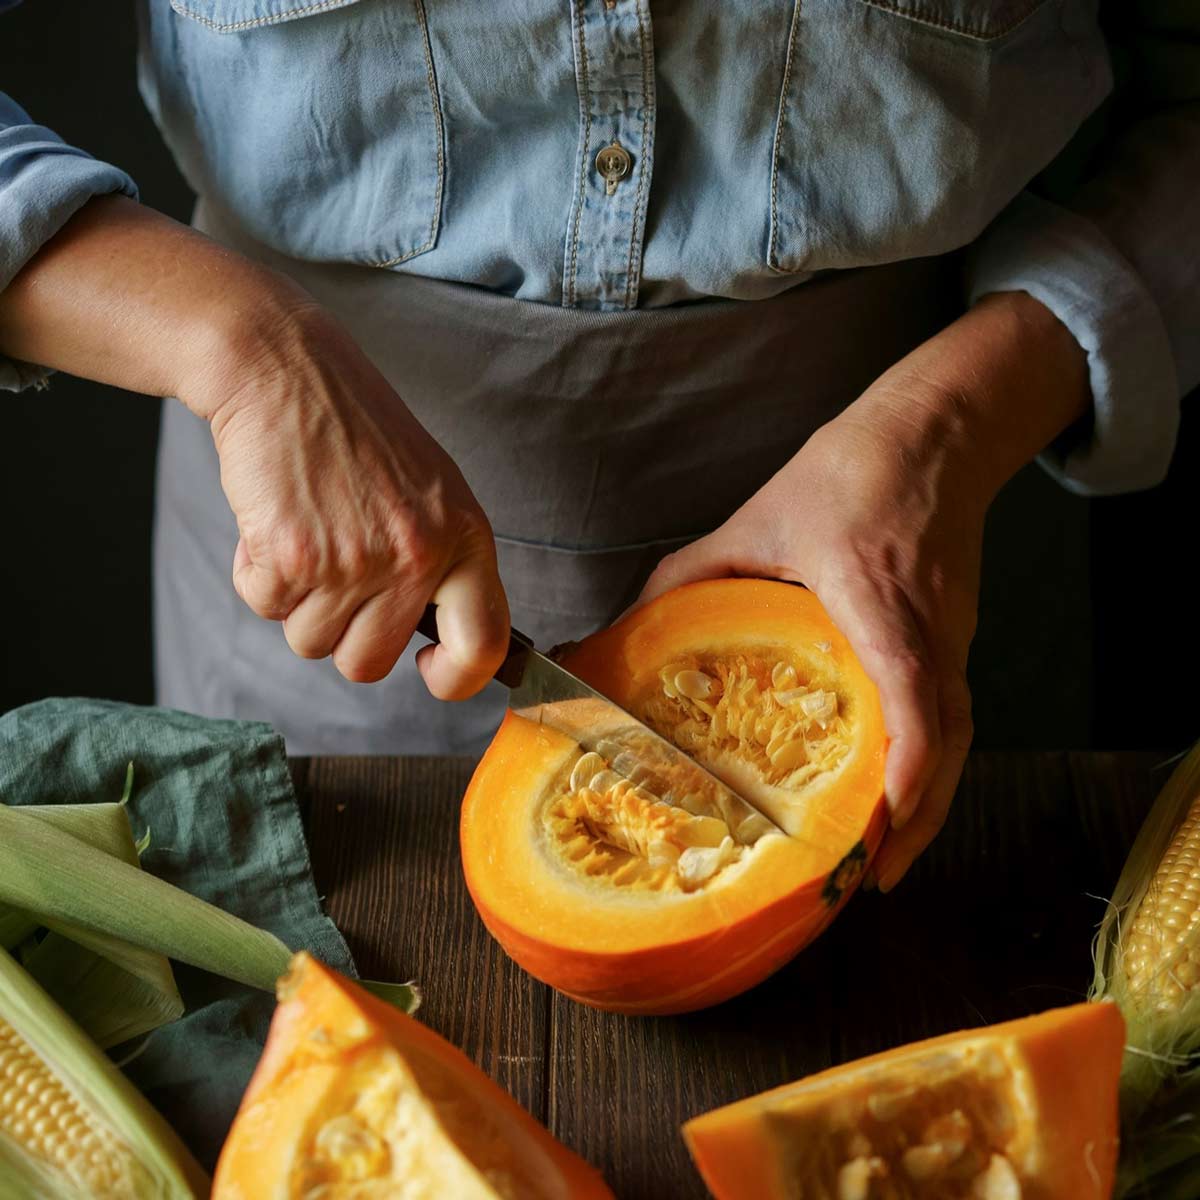 A cook slicing a pumpkin